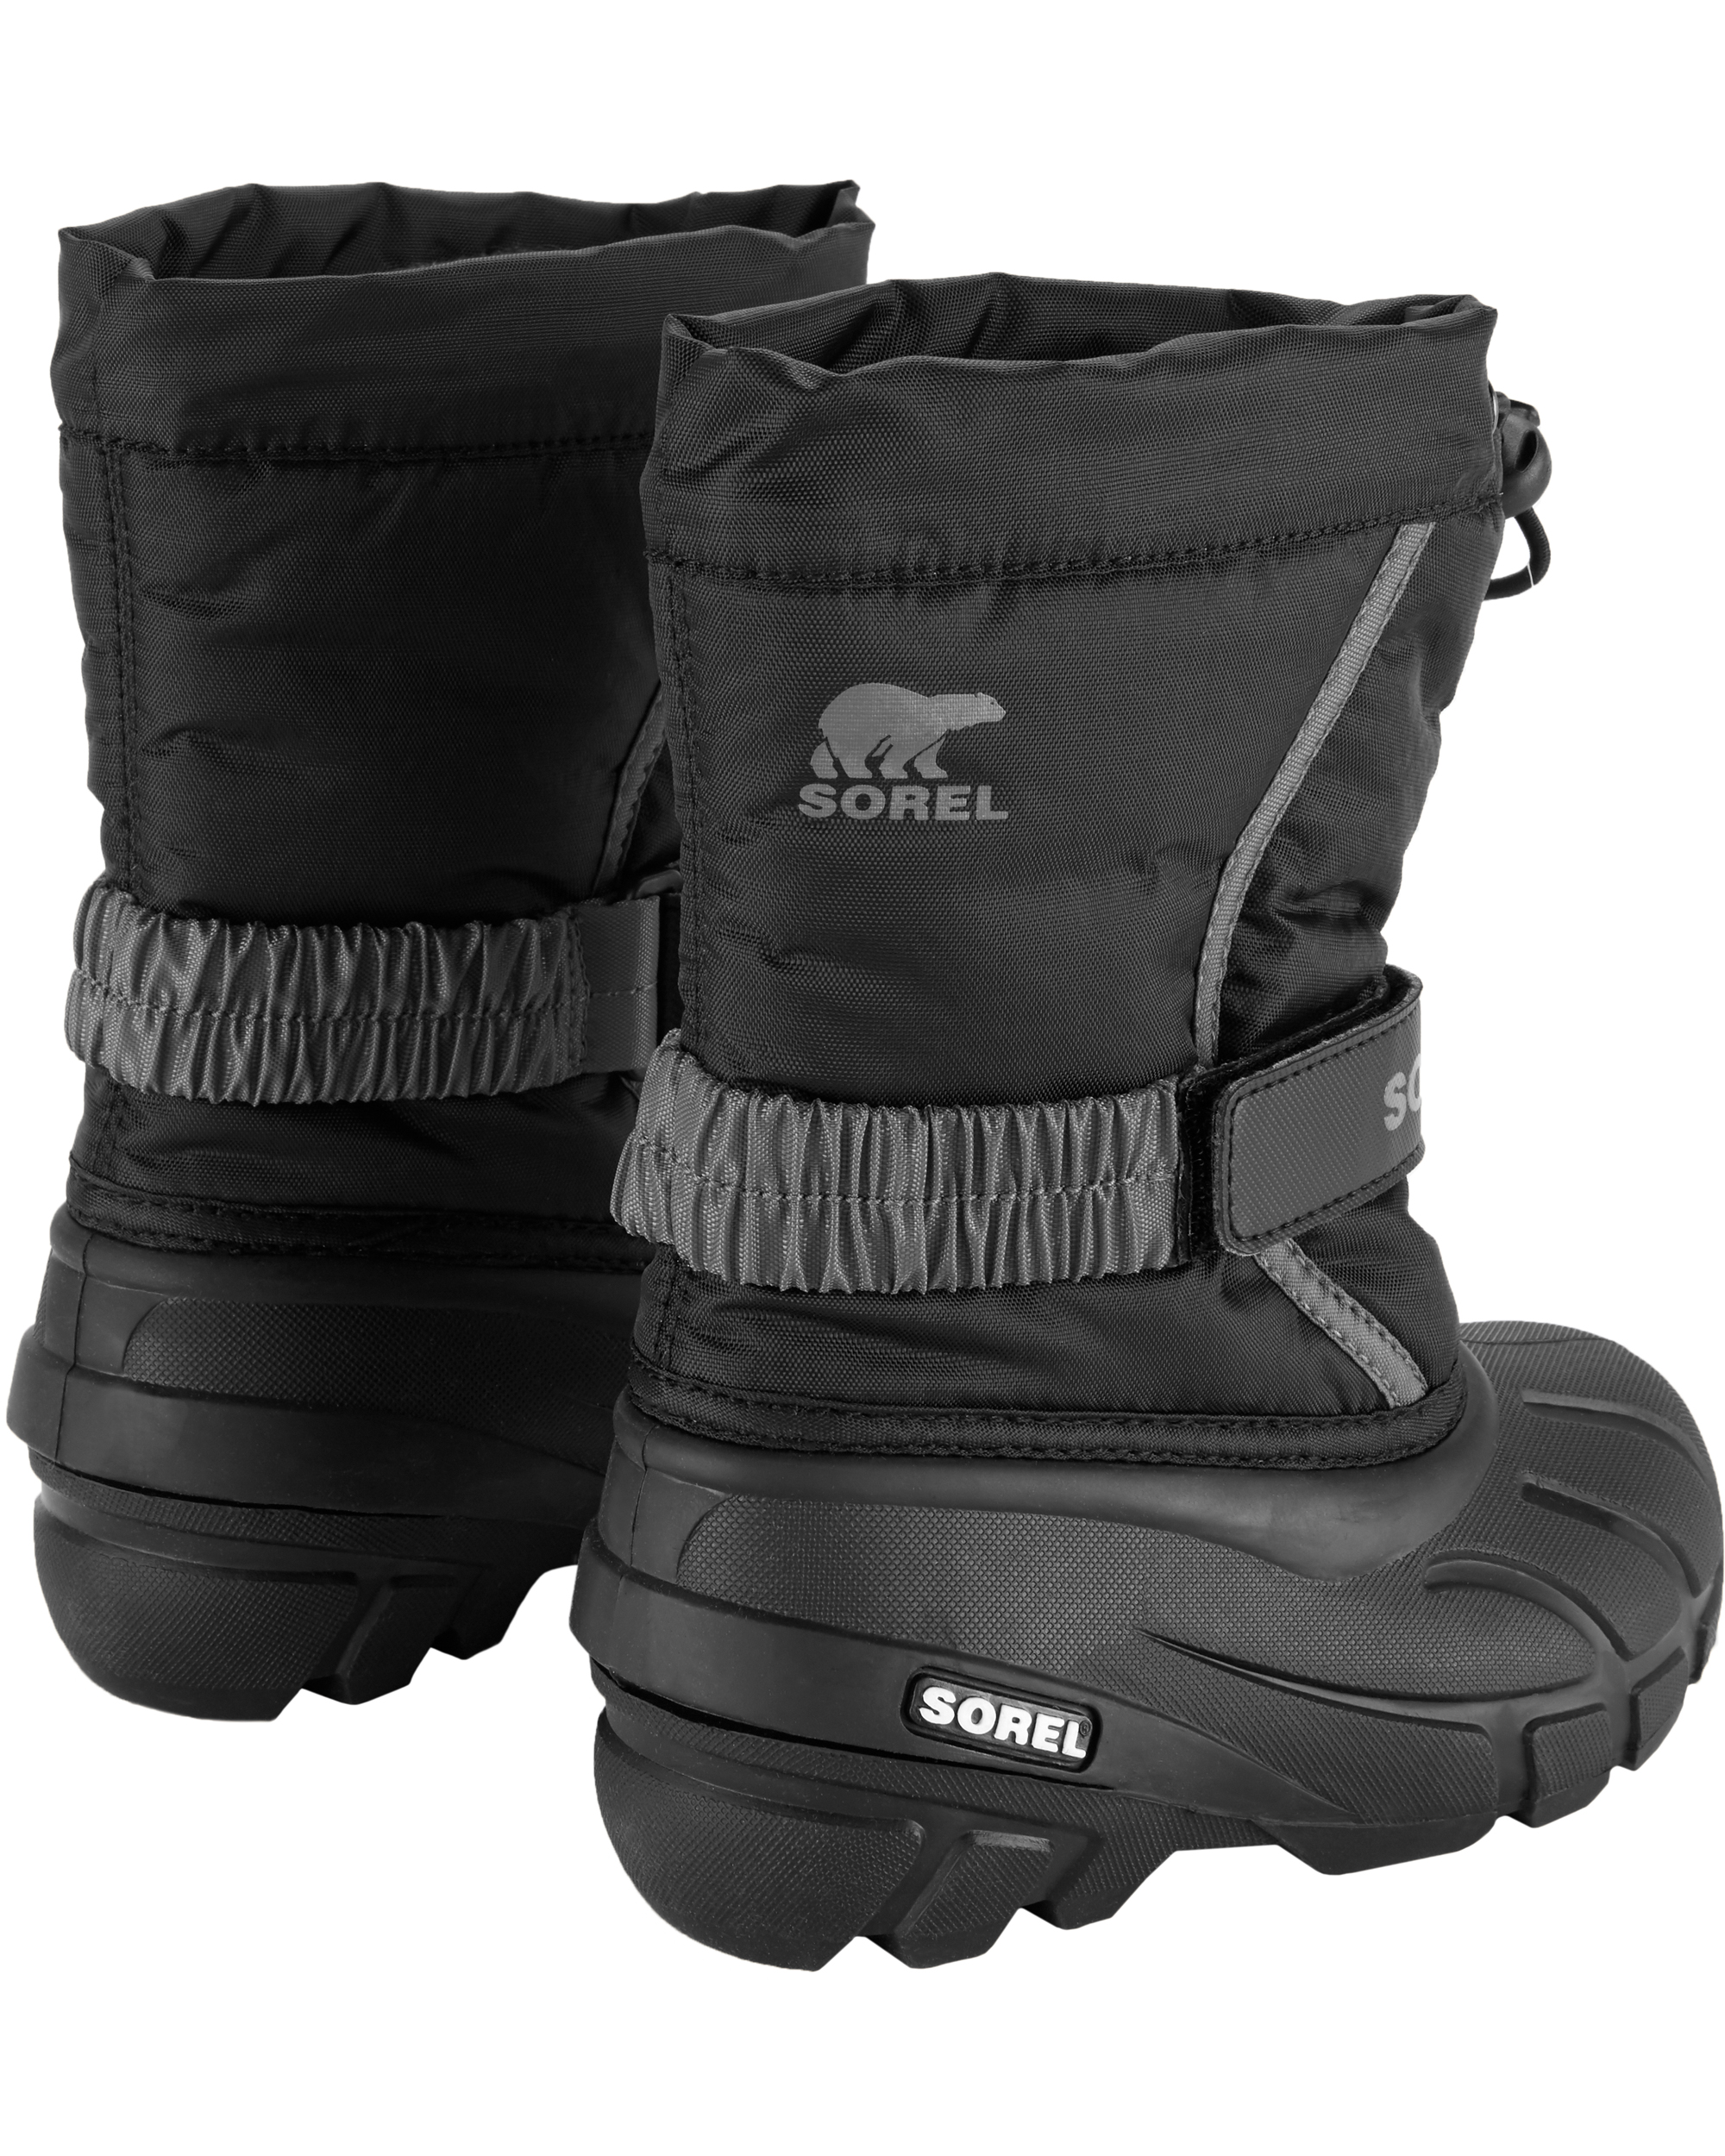 Sorel Flurry Winter Snow Boot | carters.com